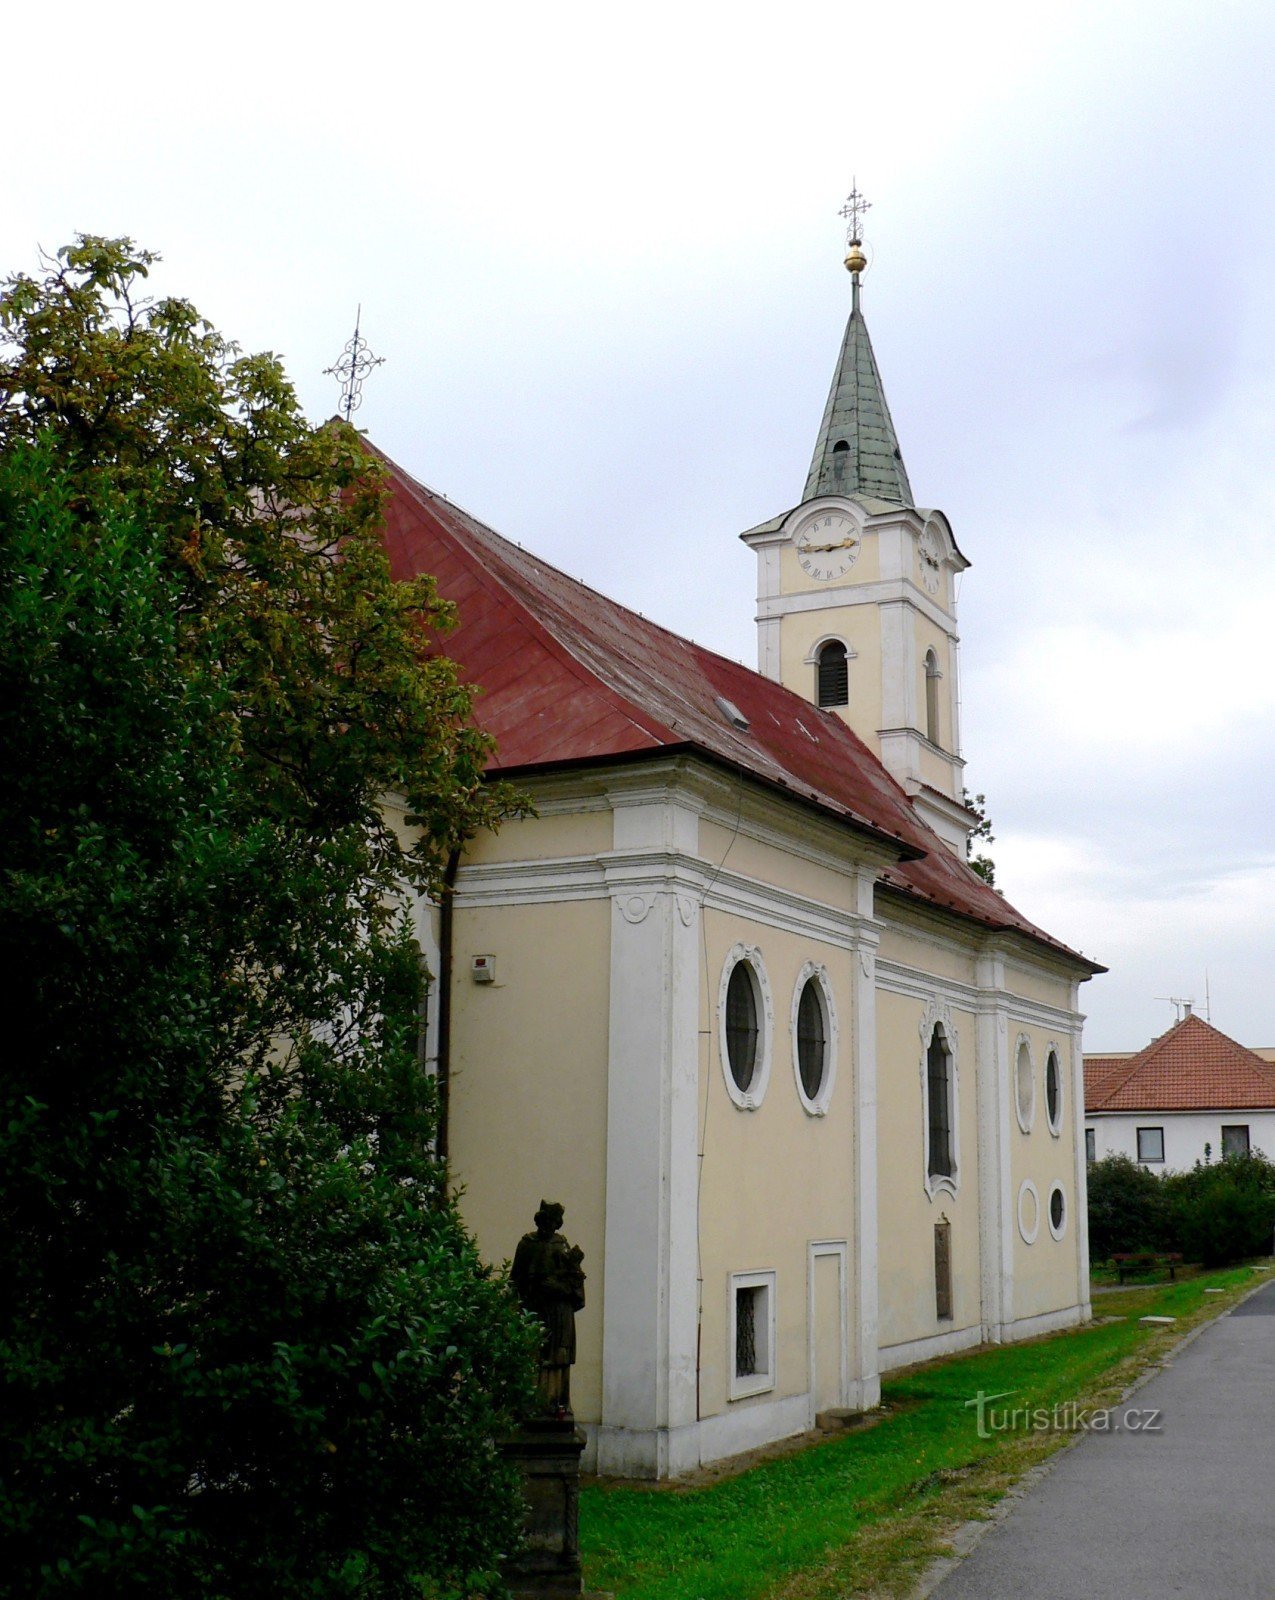 takto vidí kostel ten, kdo jde (jede) Plzeňskou ulicí z centra